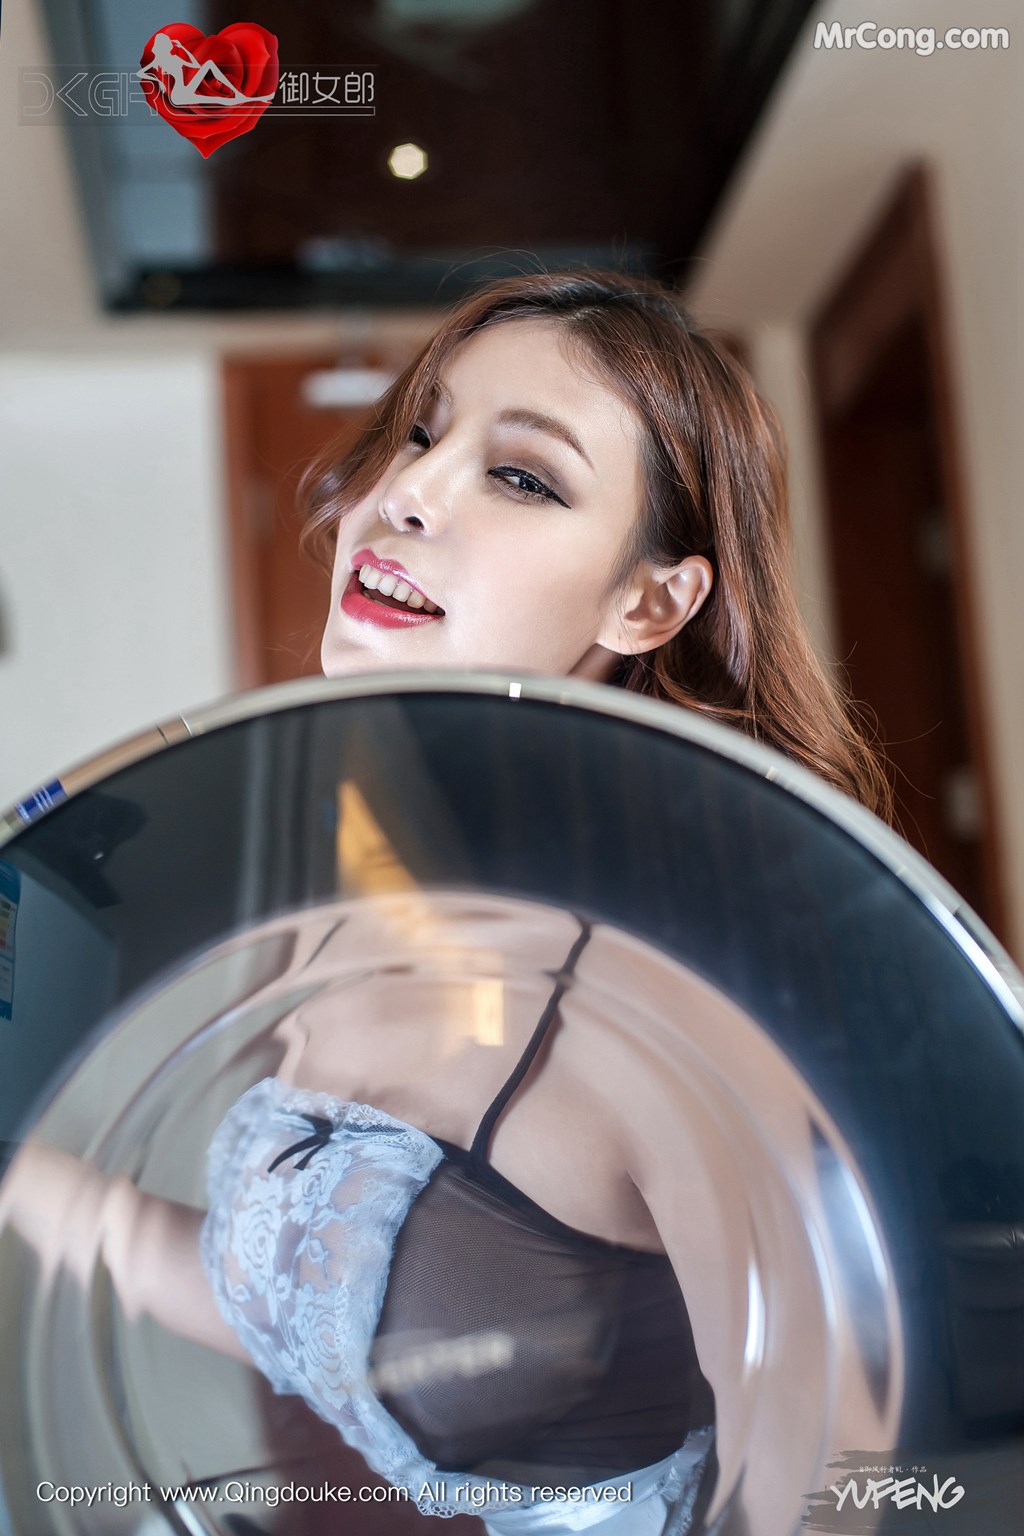 QingDouKe 2016-02-29: Model Elise (谭晓彤) (59 photos)